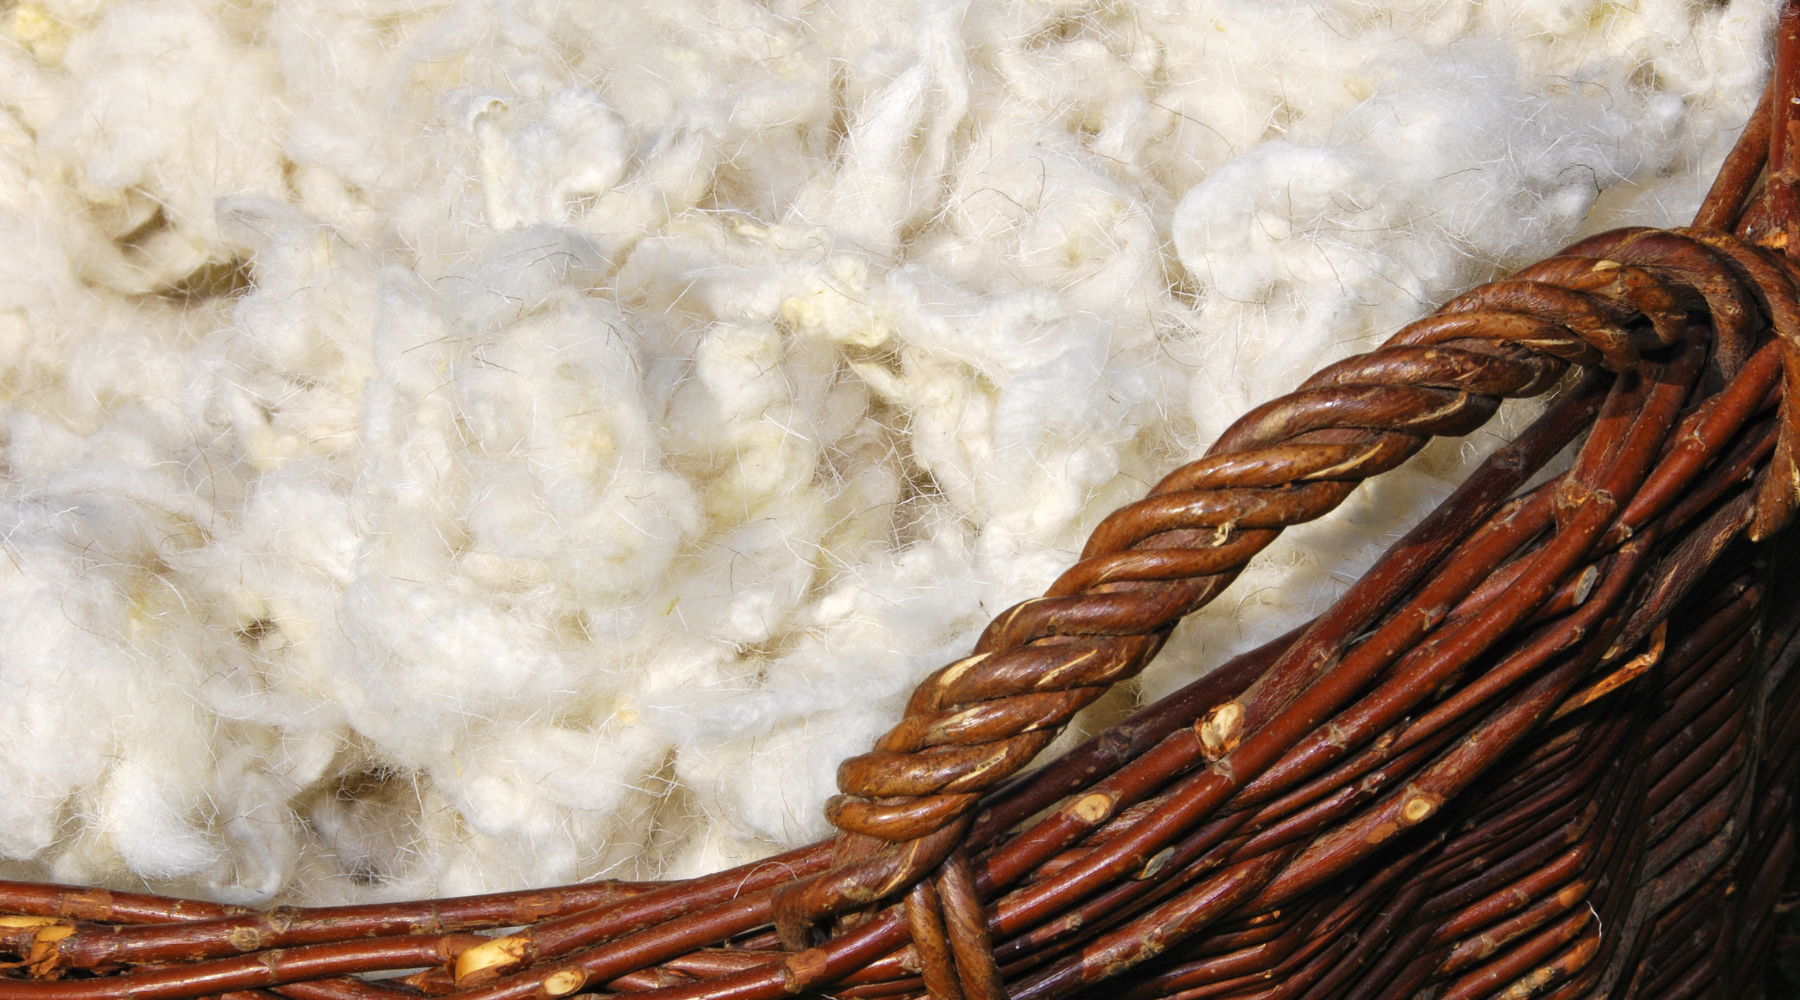 panier en osier rempli de laine de mouton de couleur blanche